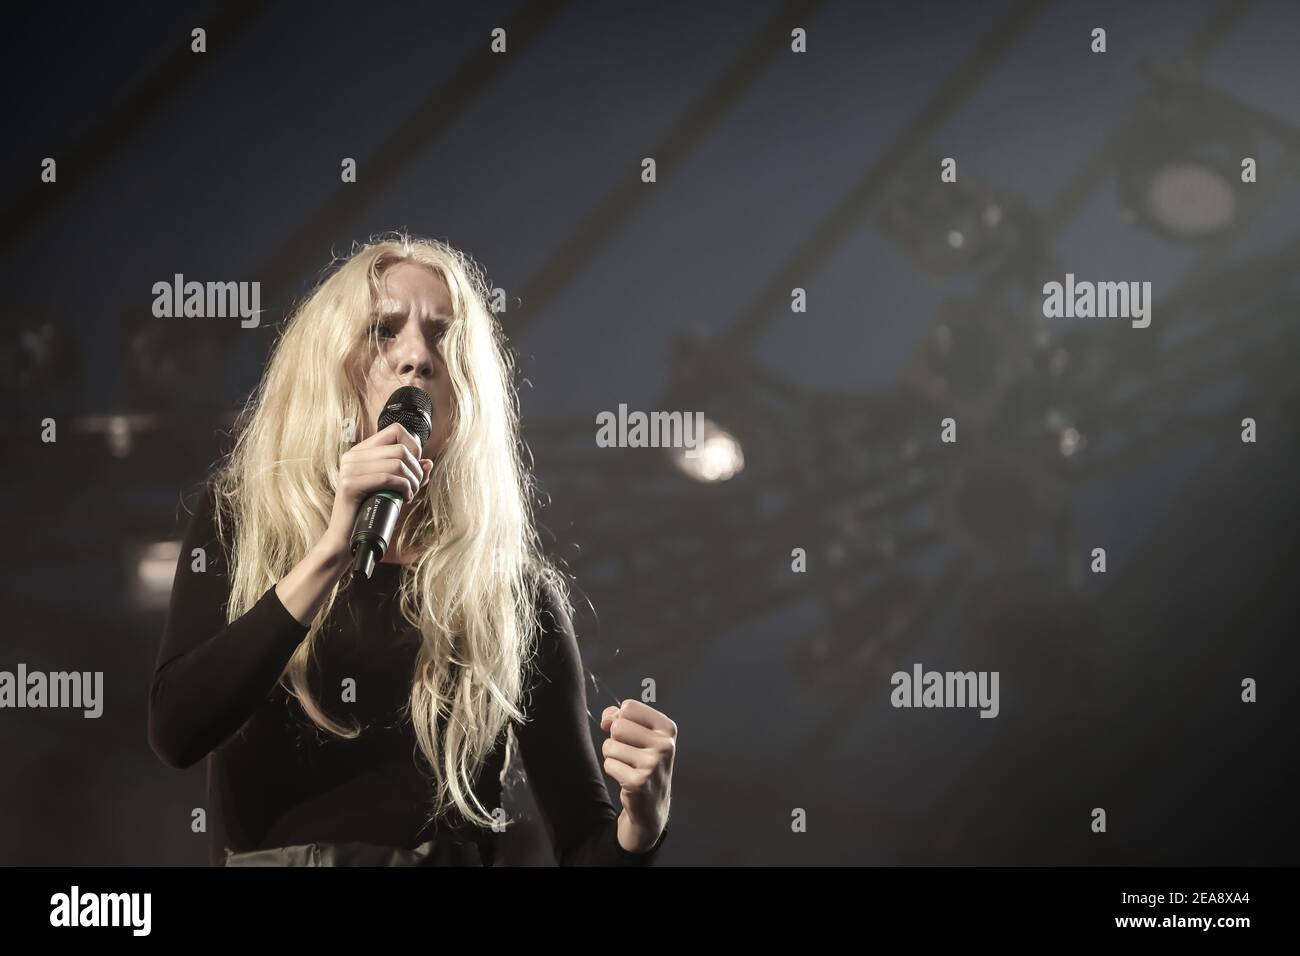 Iamamiwhoami ((aka Jonna Lee) live auf der Bühne im Rahmen des Latitude 2013 Festivals in Suffolk, England Stockfoto